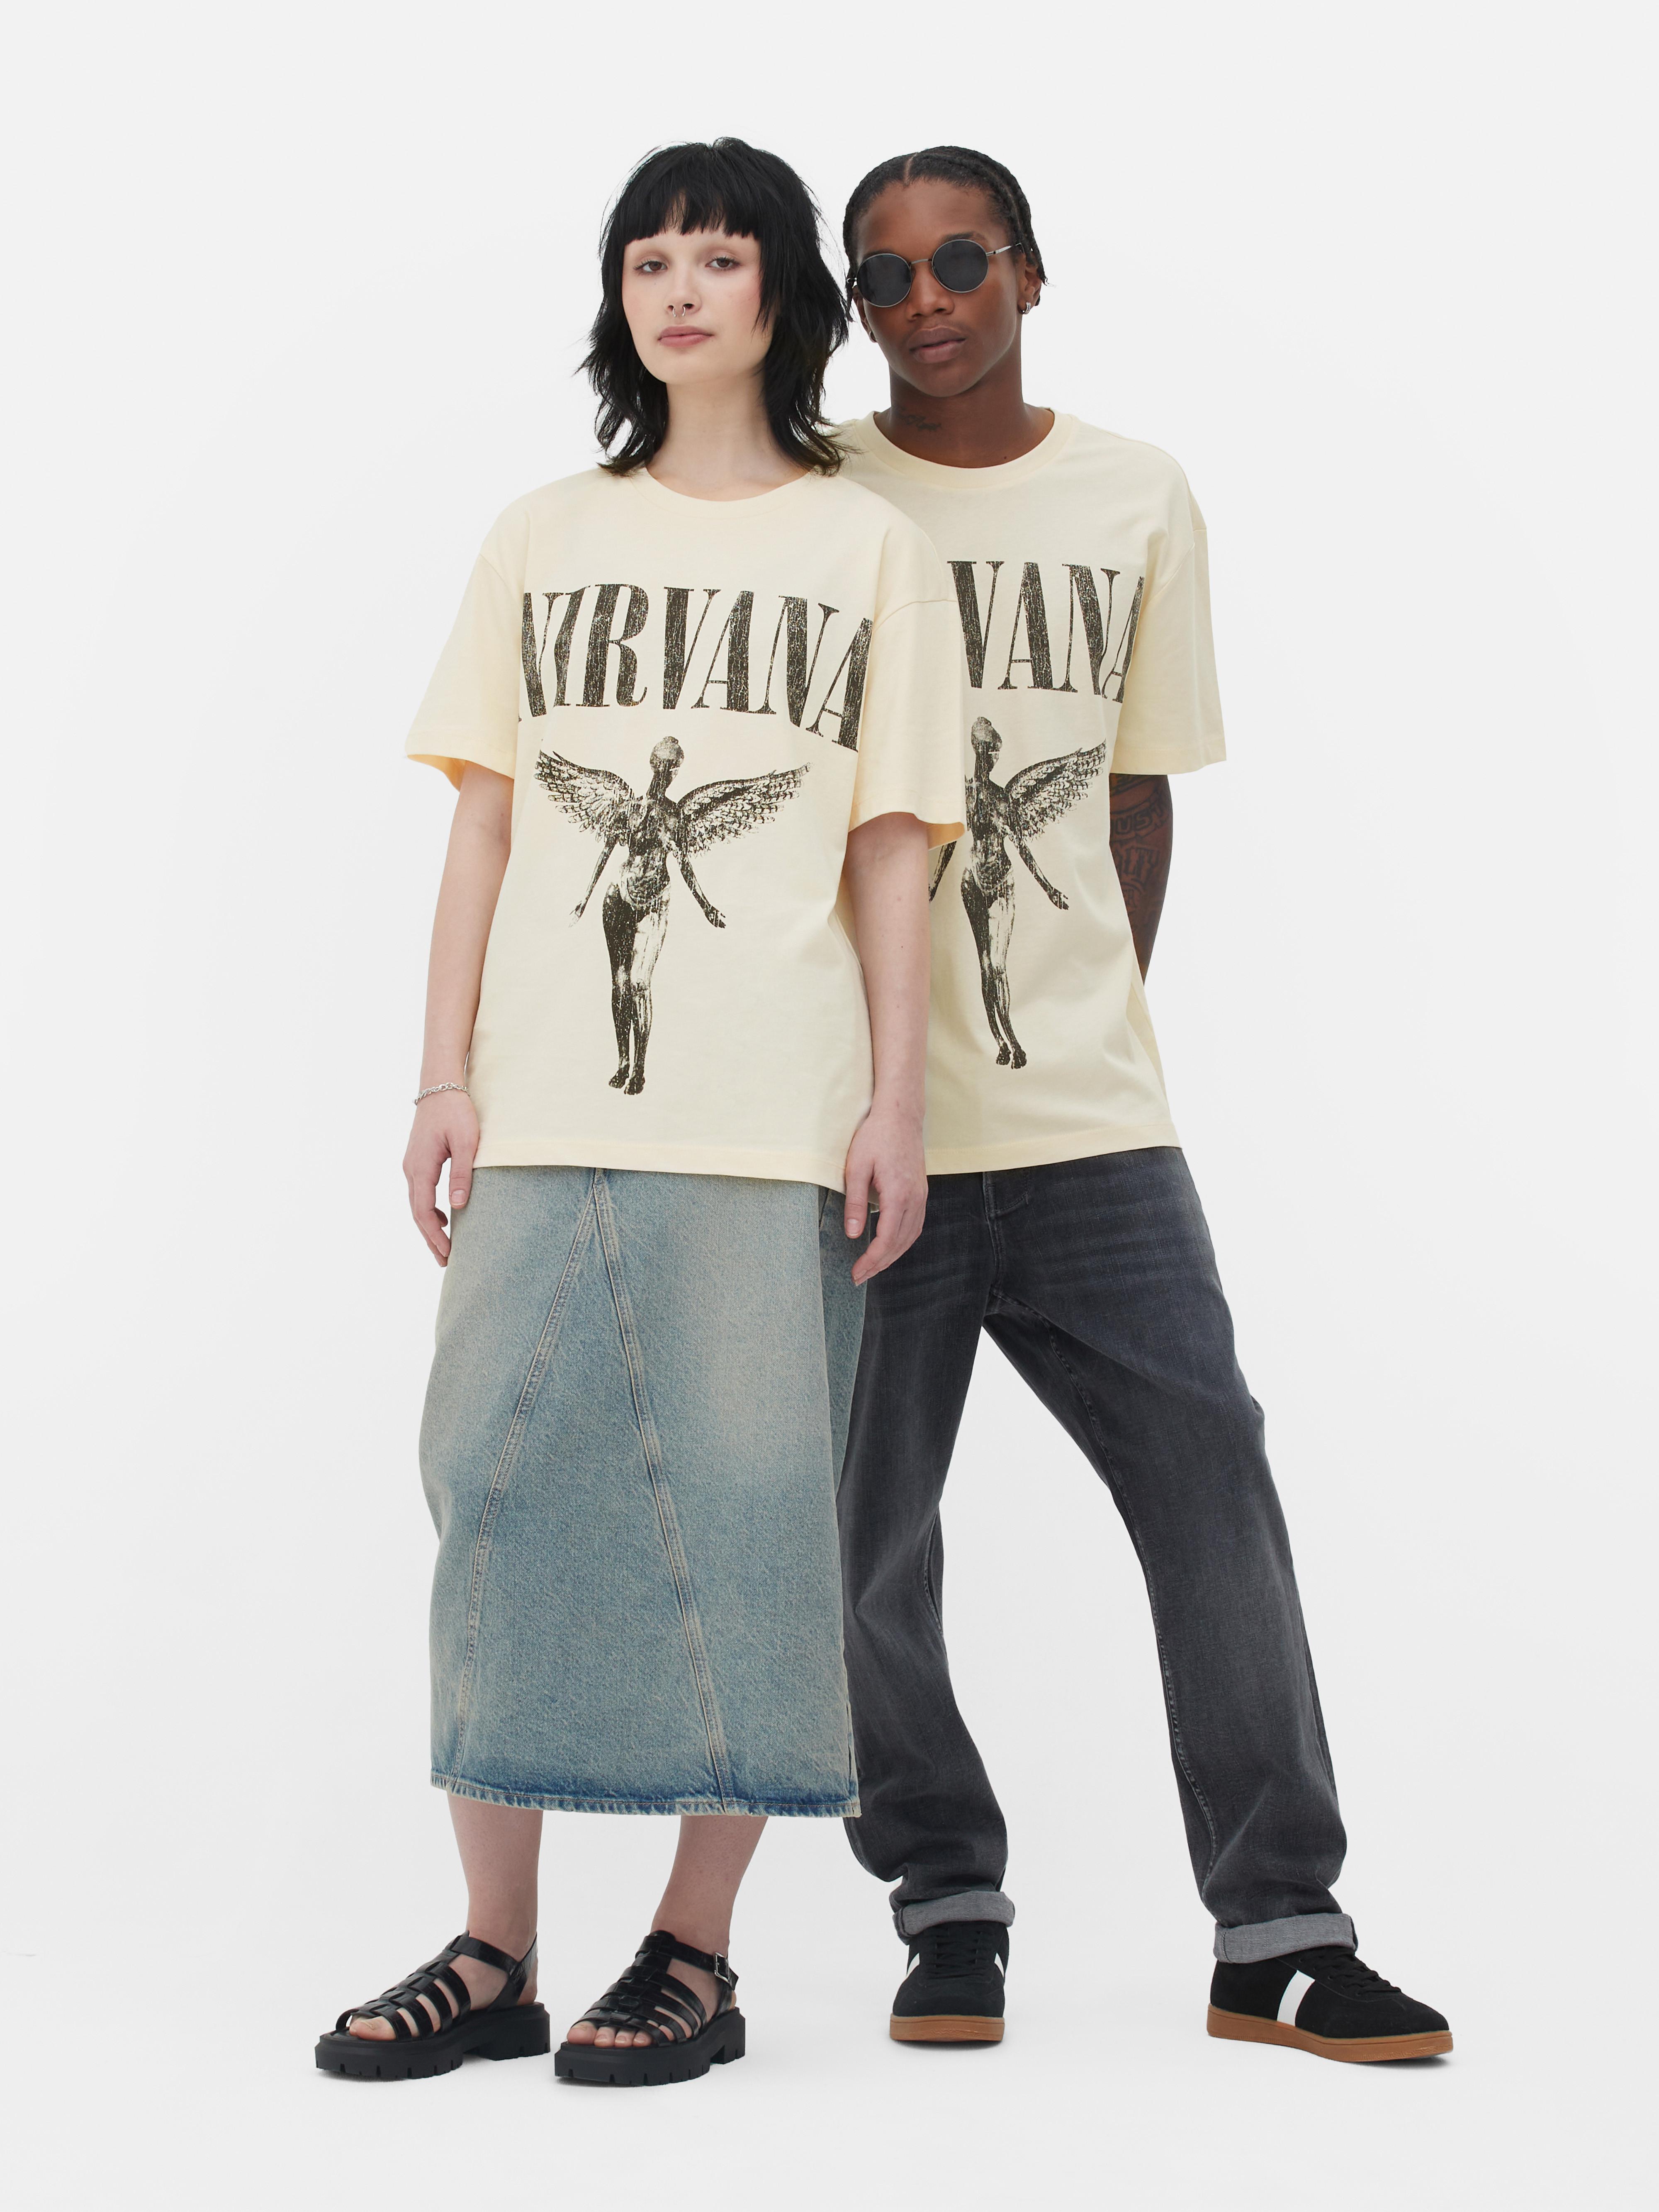 Camiseta de Nirvana de manga corta